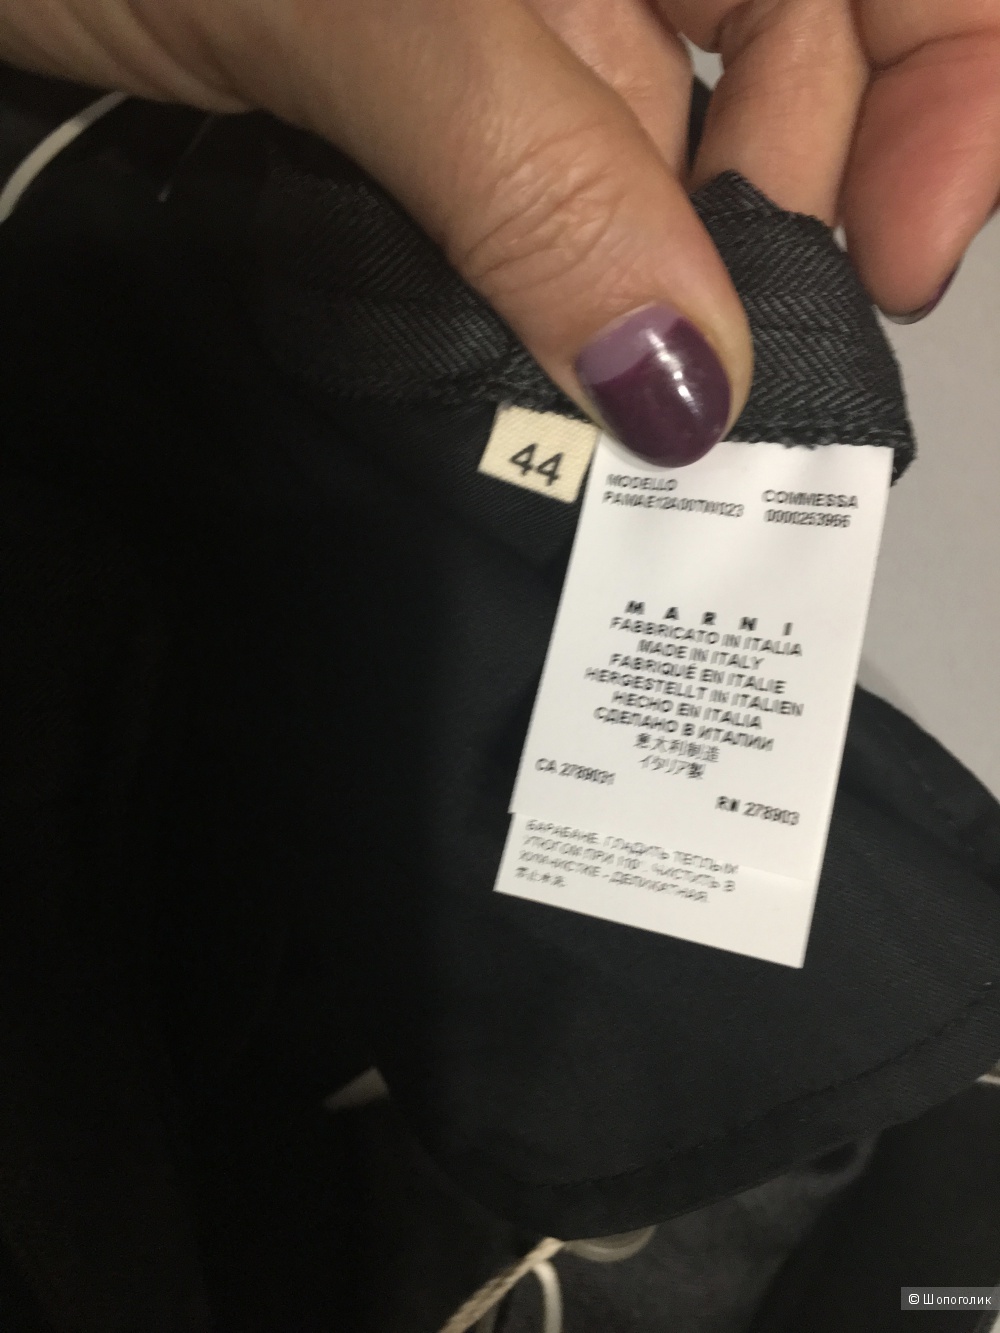 Шерстяные брюки MARNI, дизайнерский размер 44 (IT), на рос. 48. Свинцово-серый